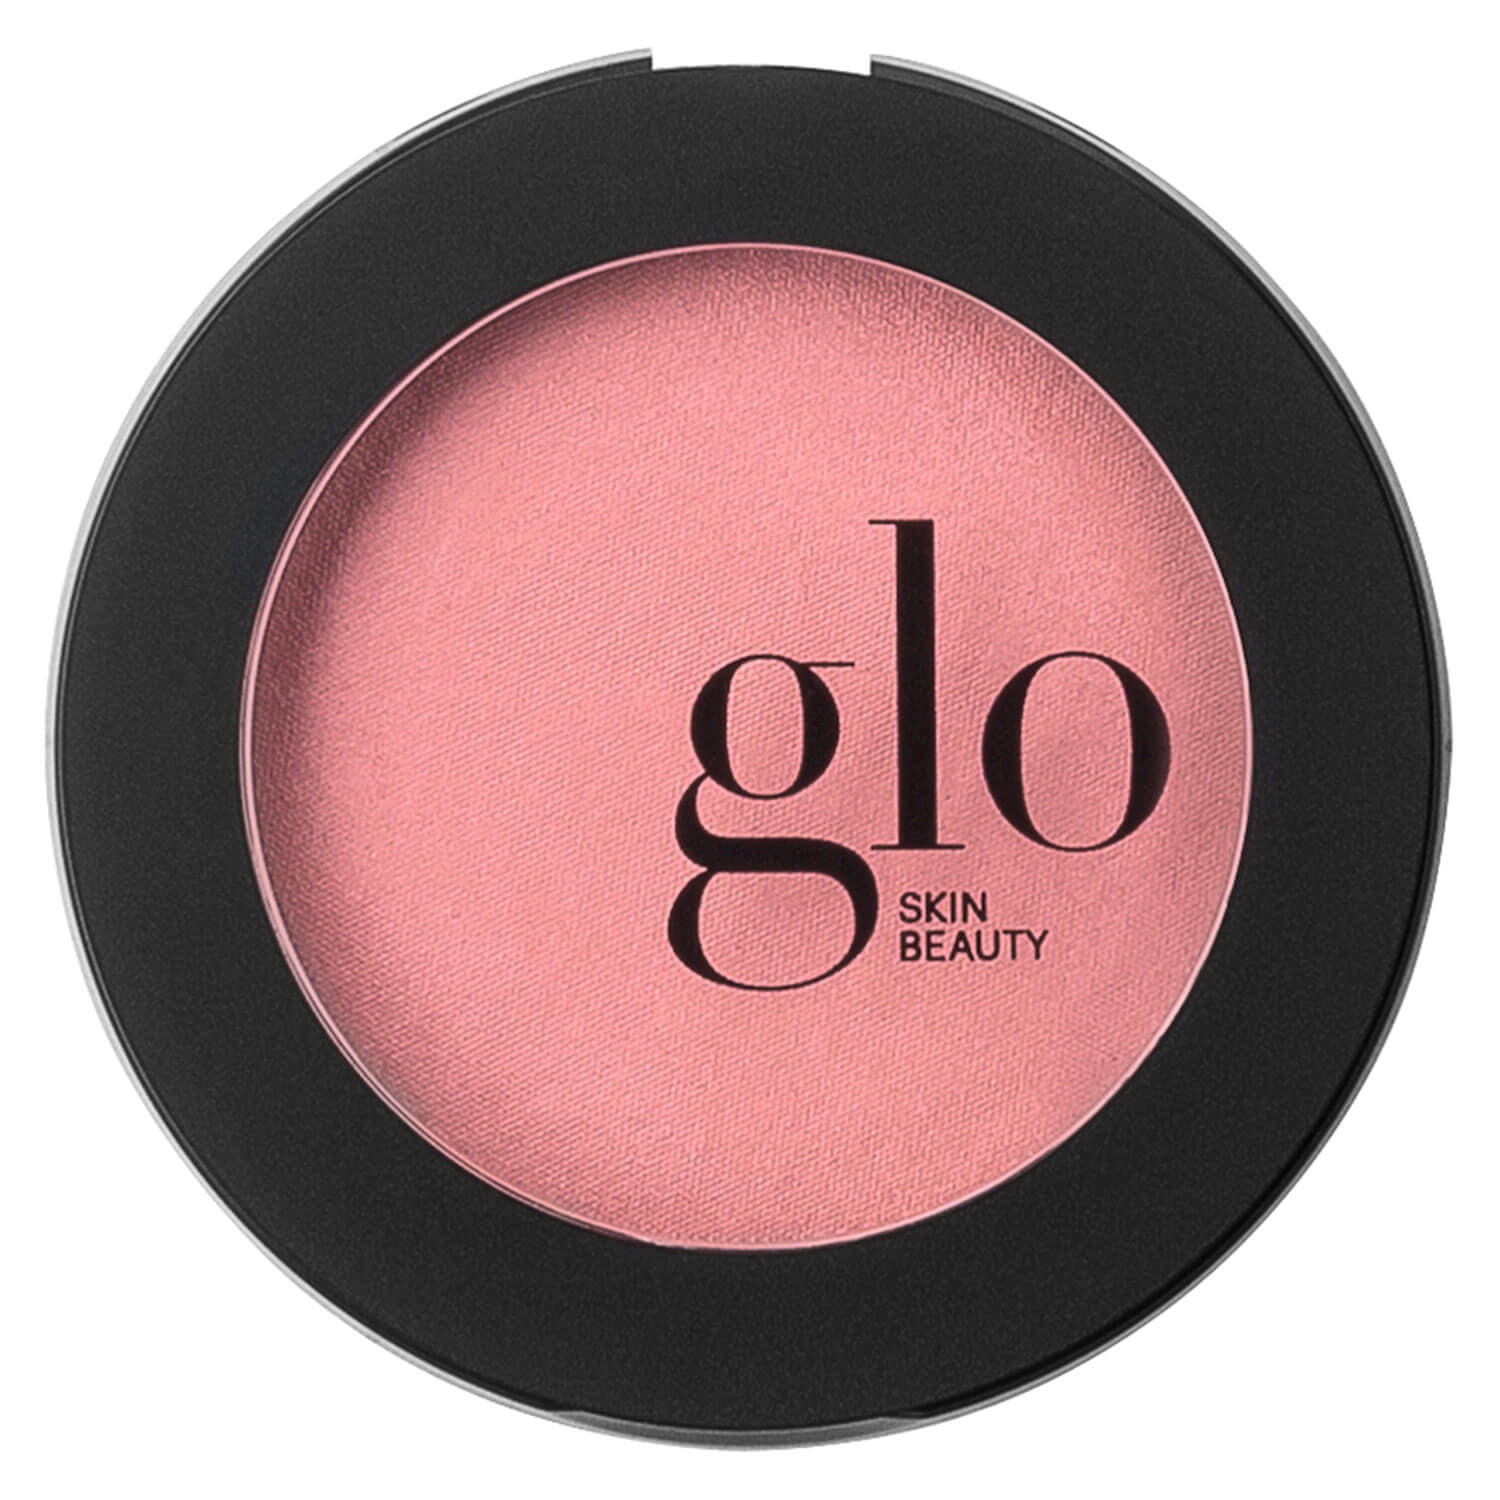 Produktbild von Glo Skin Beauty Blush - Blush Flowerchild